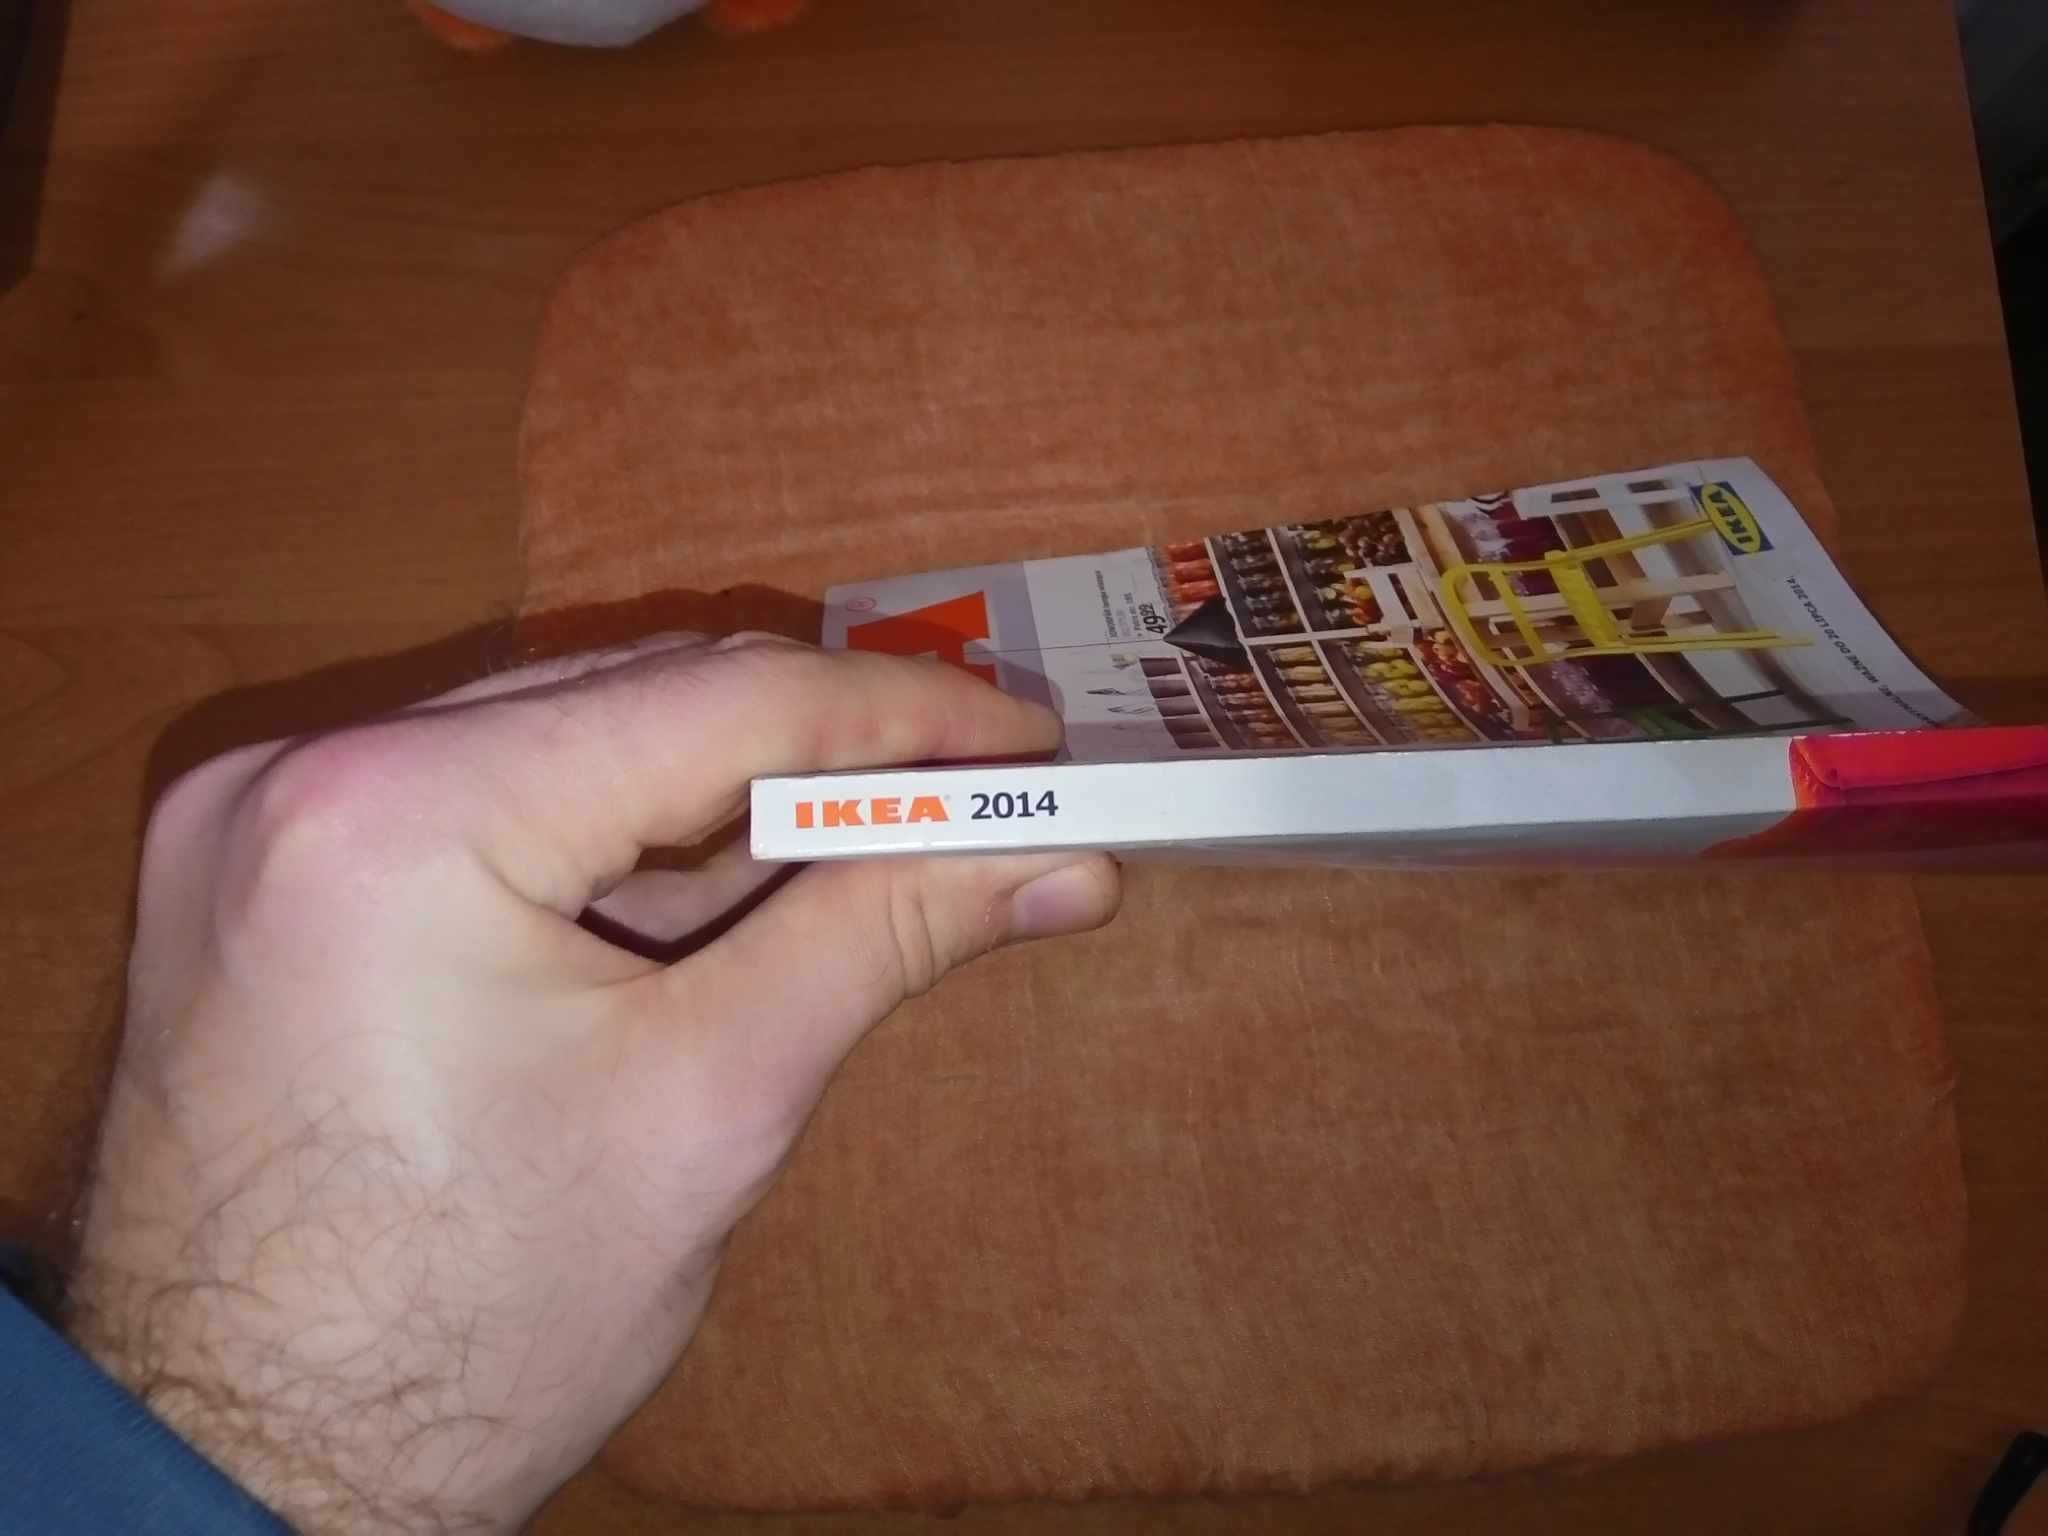 Katalog Ikea 2014 książka magazyn sklepowy